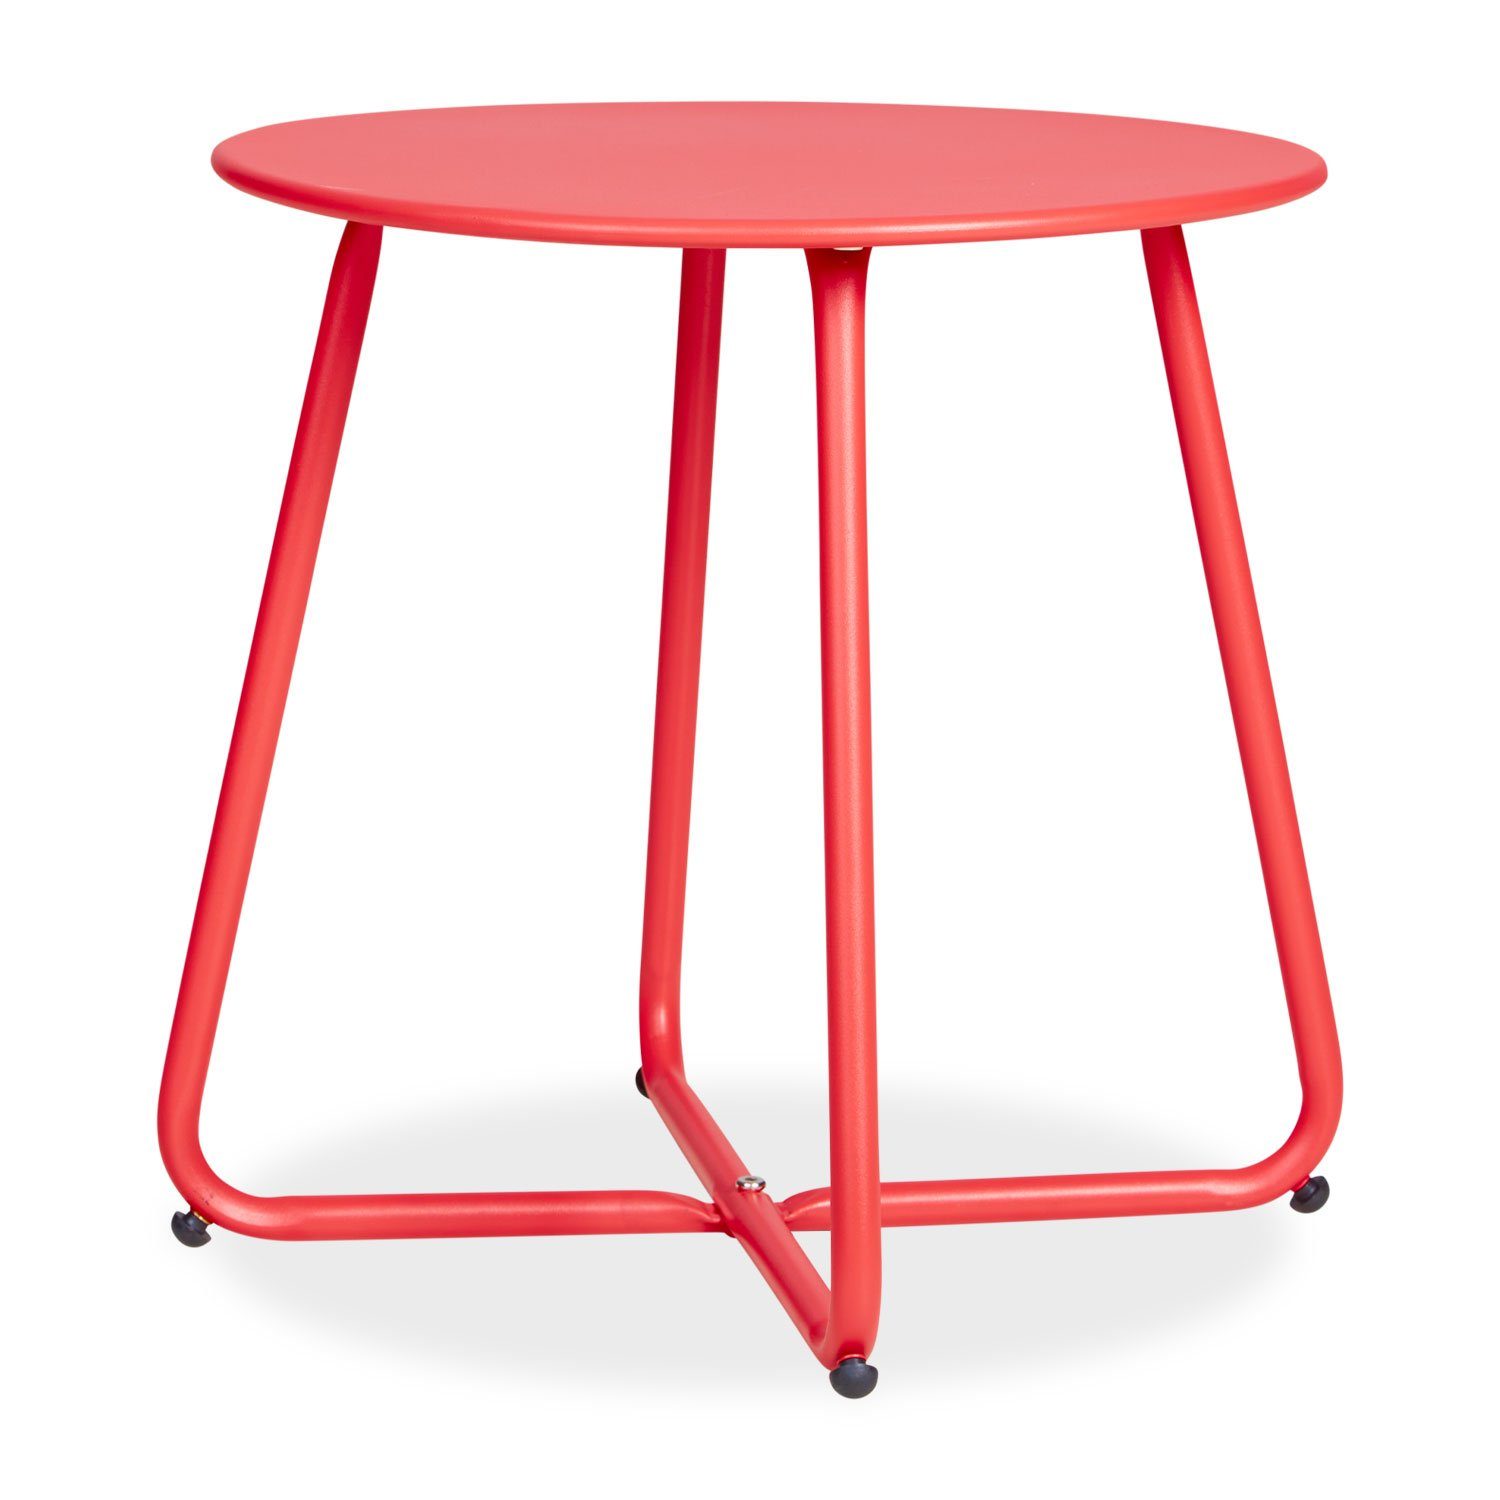 Homestyle4u Beistelltisch Gartentisch Rund Metall Balkontisch Tisch Kaffeetisch 45cm Durchmesser, Rot